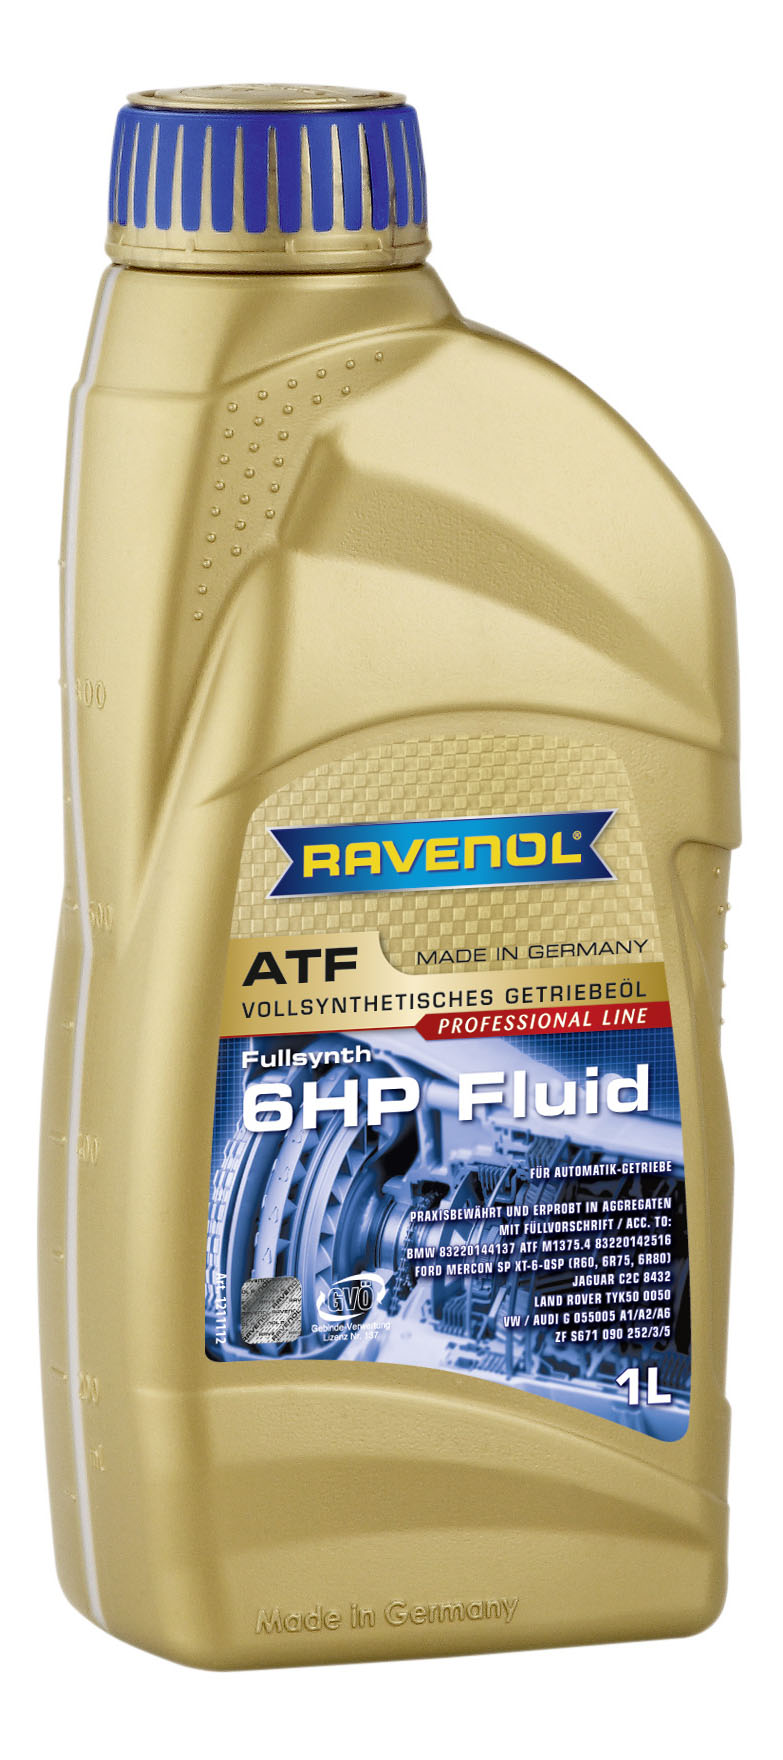 Трансмиссионное масло ATF 6 HP Fluid (1л) (второй номер 4014835732711)